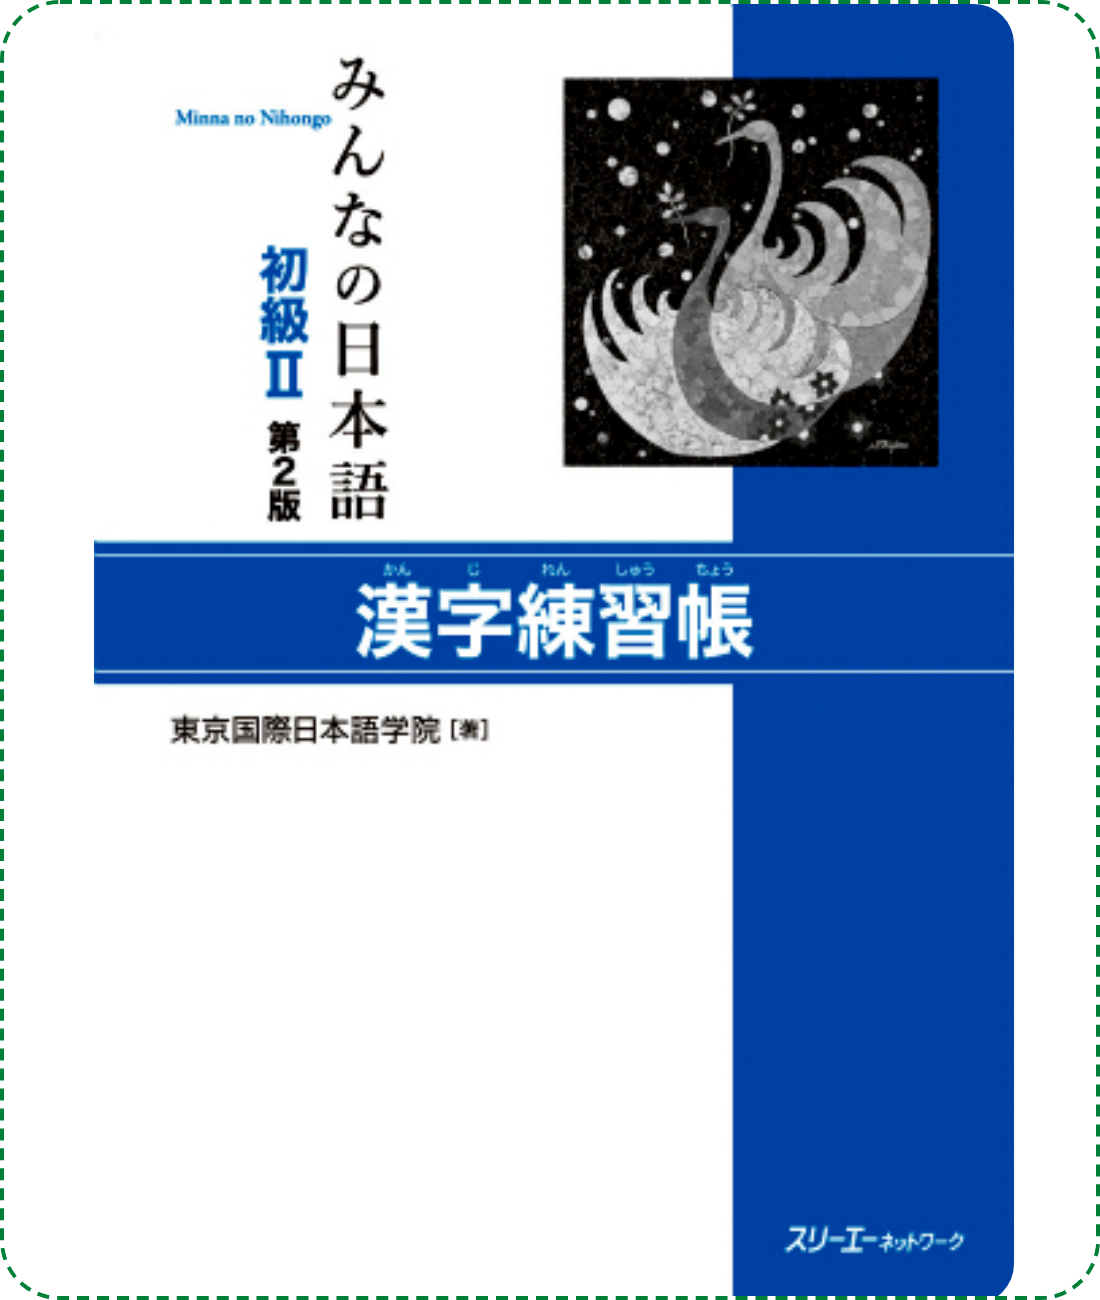 Giáo trình Minna No Nihongo Sơ Cấp 2 – Luyện Hán tự Kanji Renshuuchou (Bản mới) | みんなの日本語初級〈2〉漢字練習帳